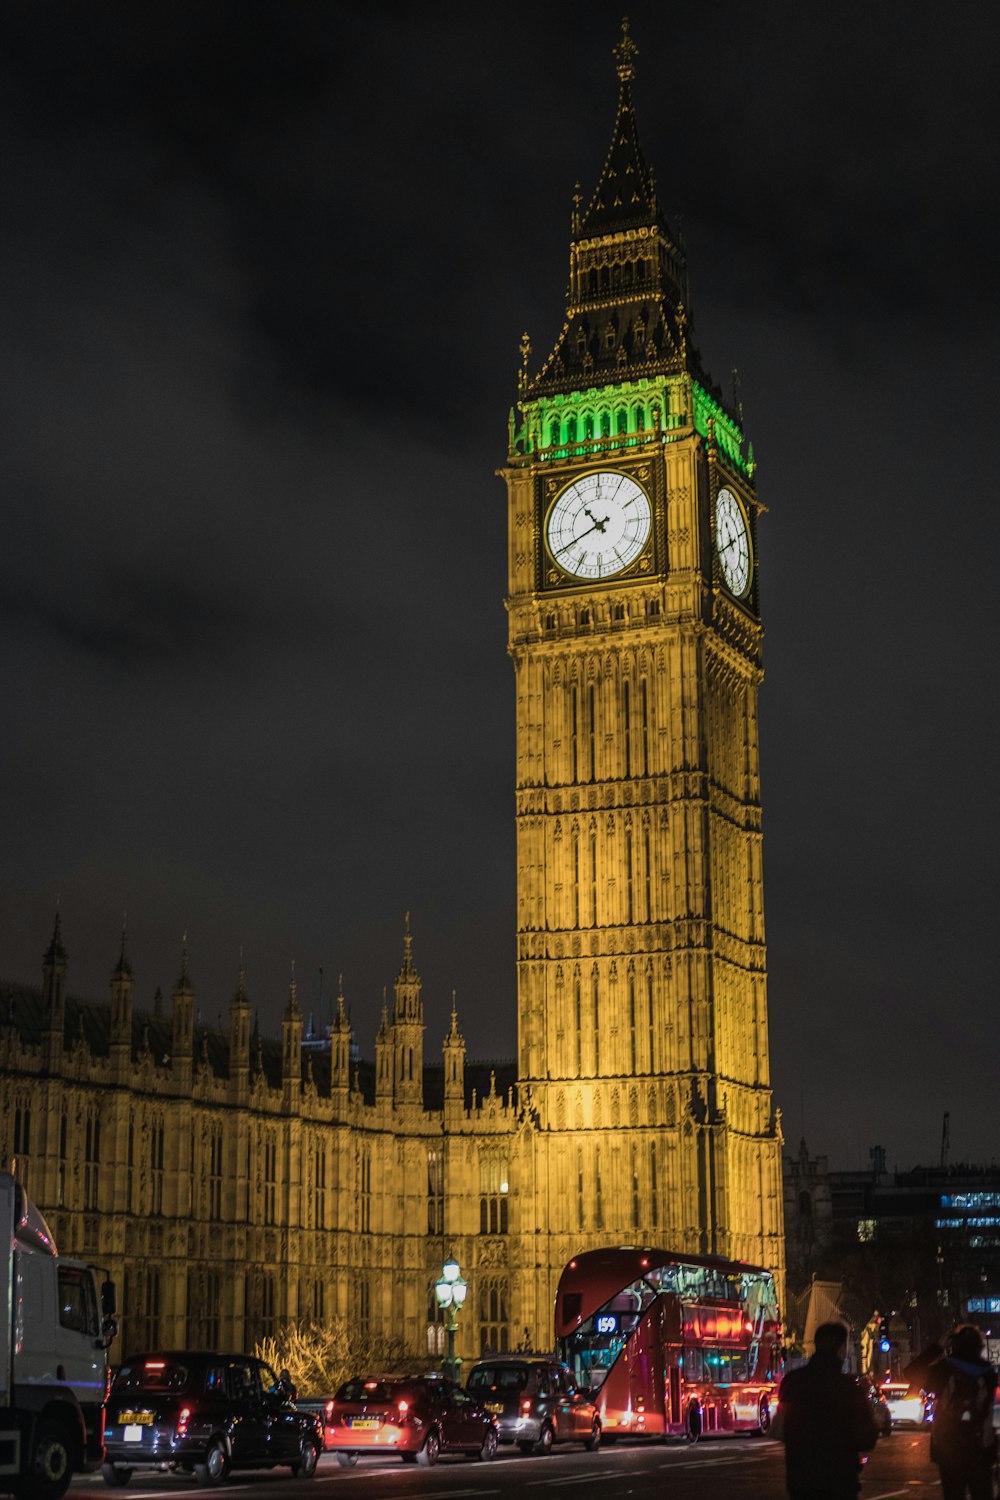 Big ben london during night time photo – Free Uk Image on Unsplash